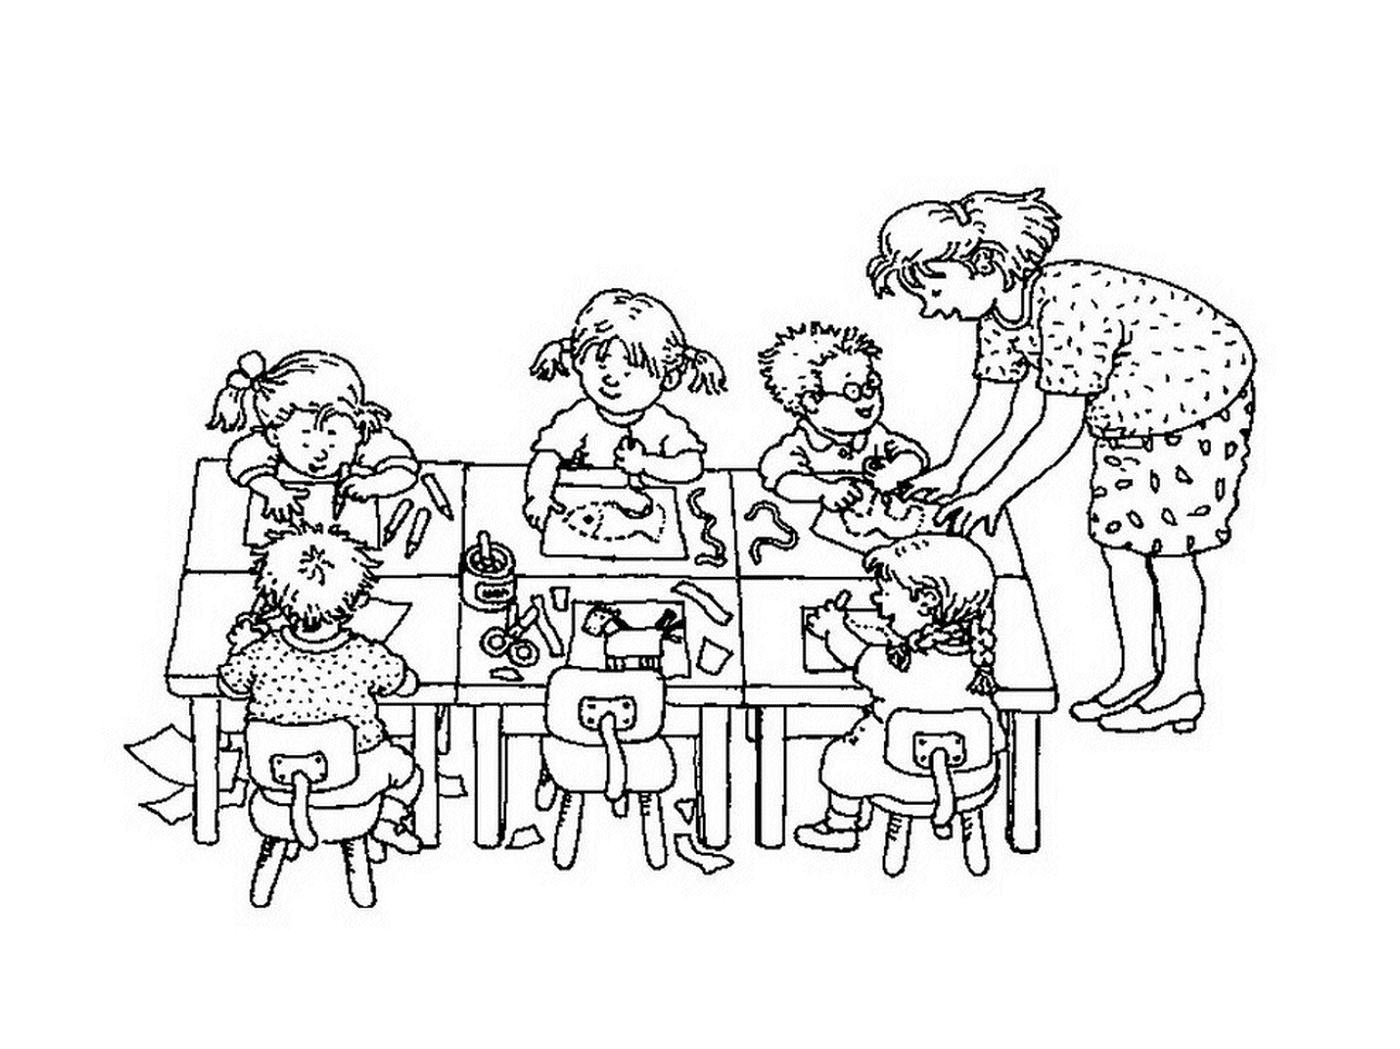  Un insegnante e i suoi studenti seduti a un tavolo 